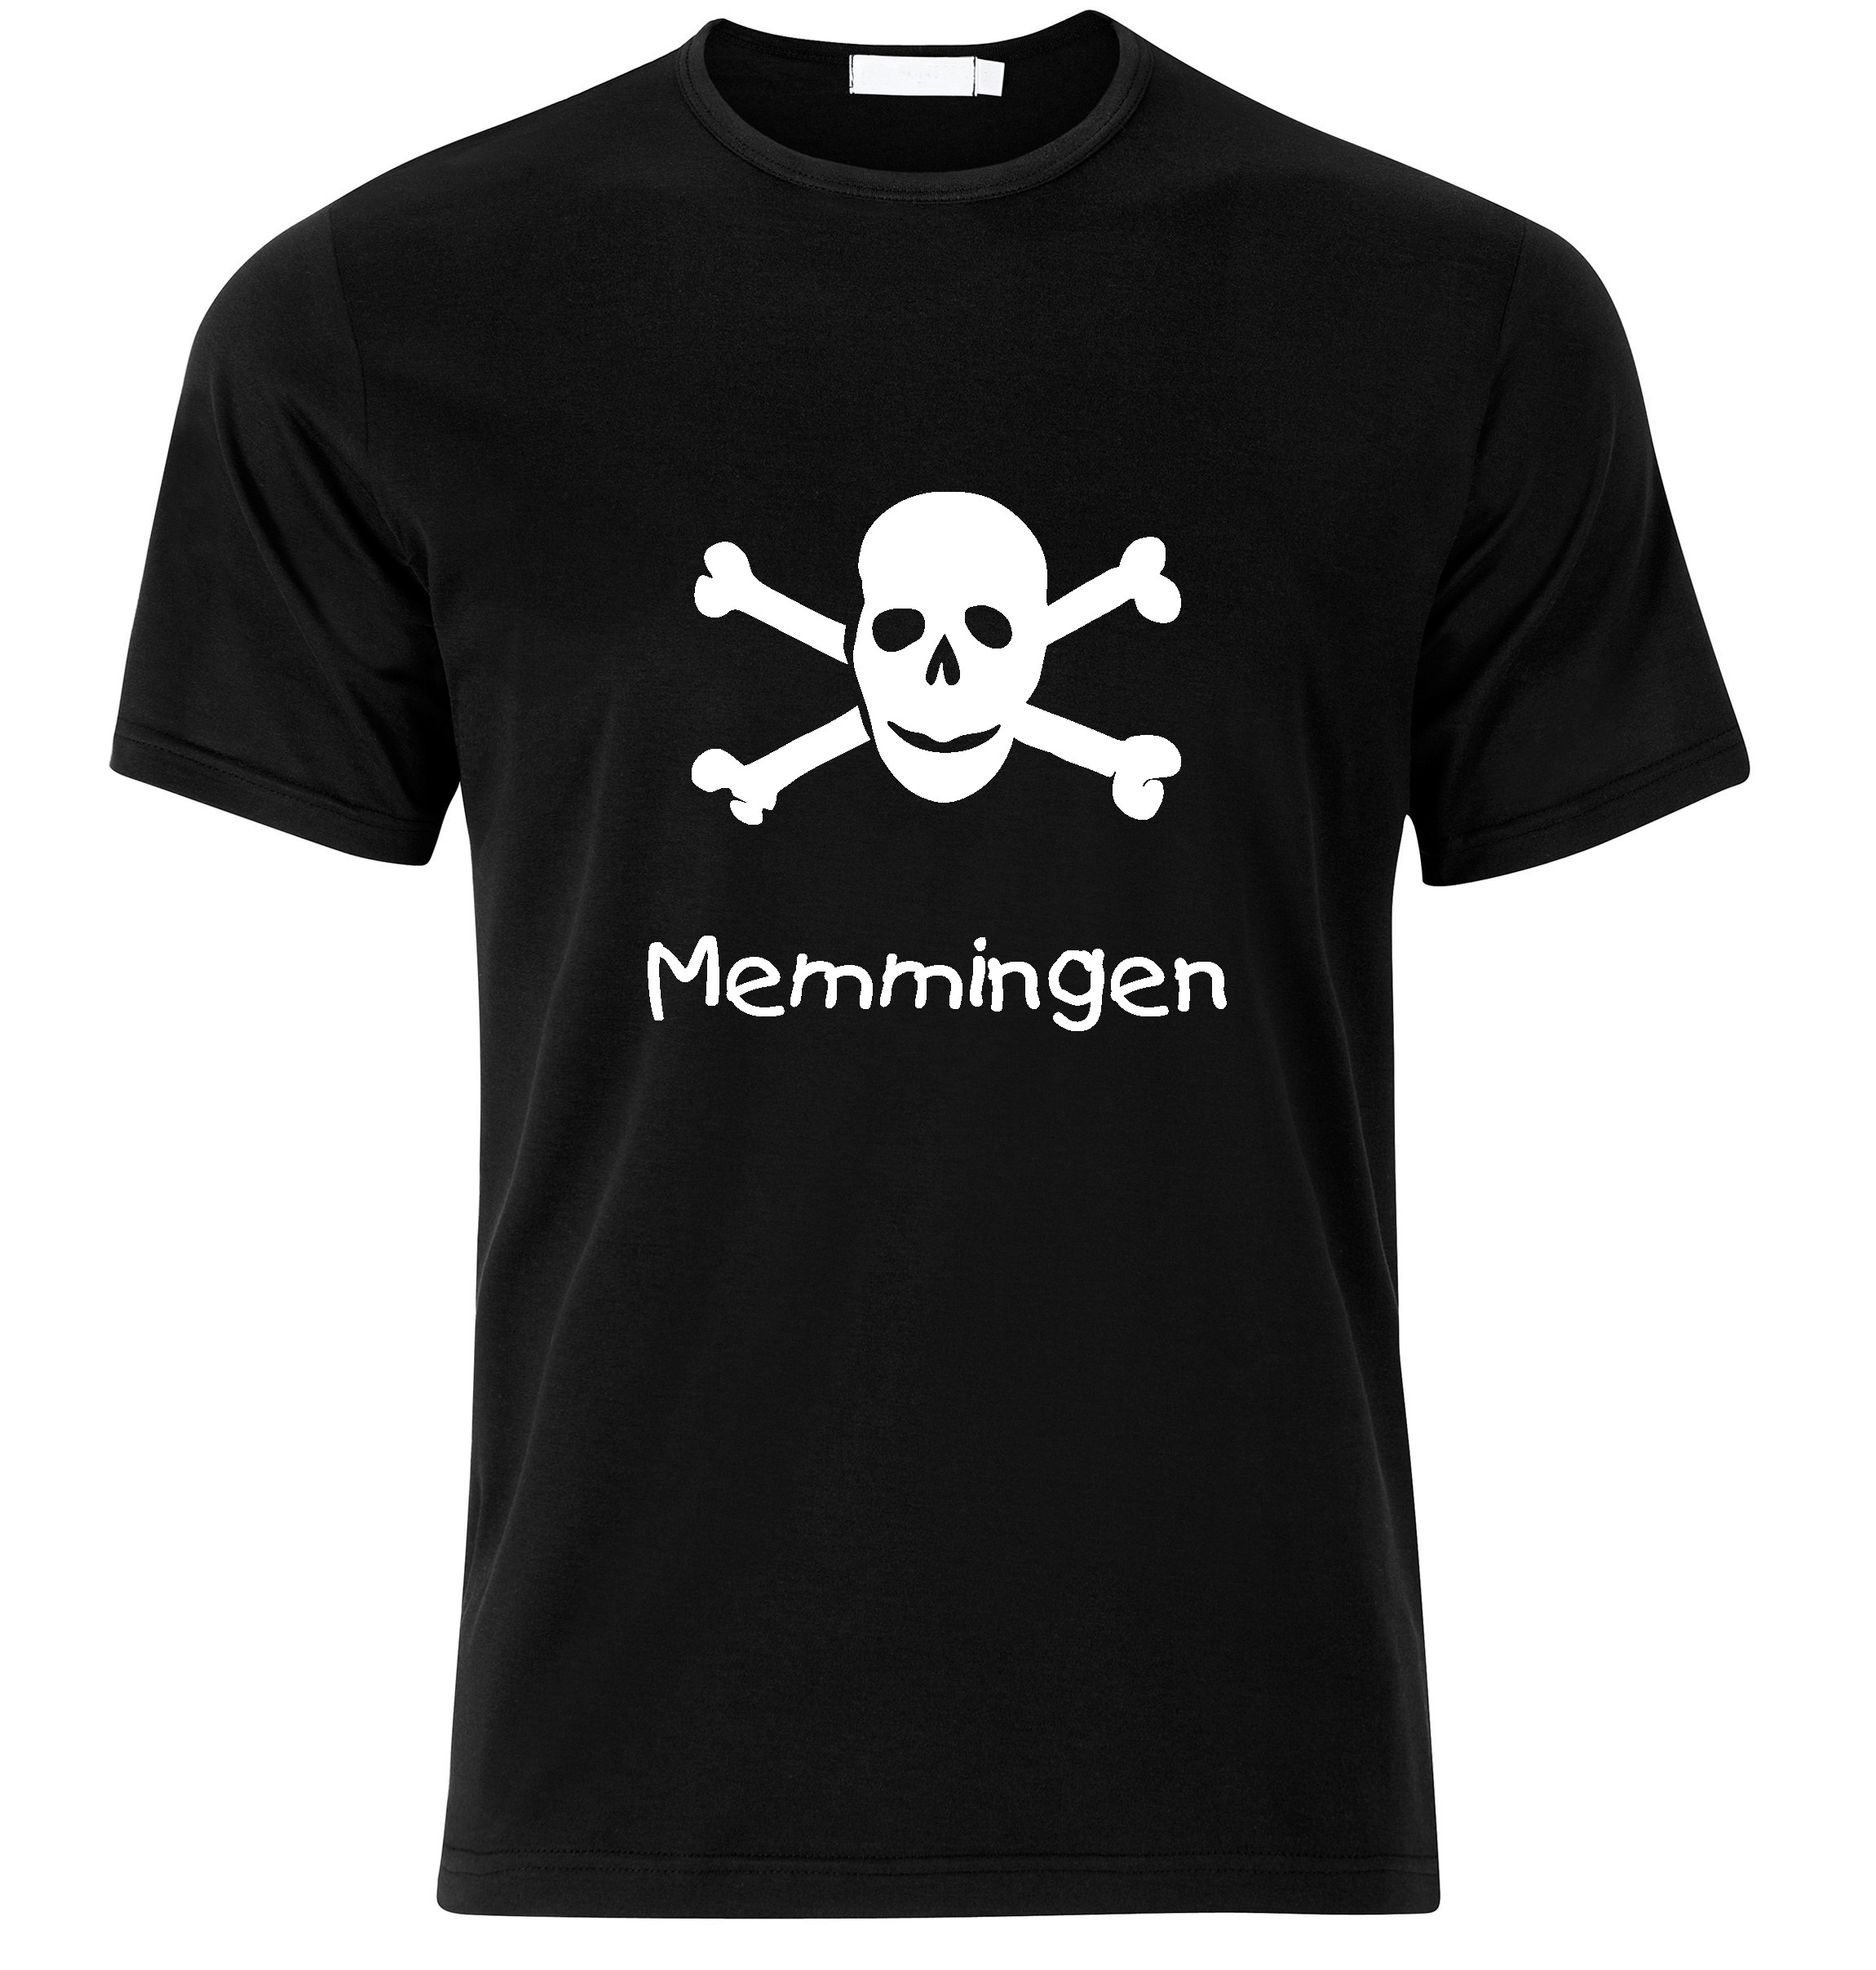 T-Shirt Memmingen Jolly Roger, Totenkopf